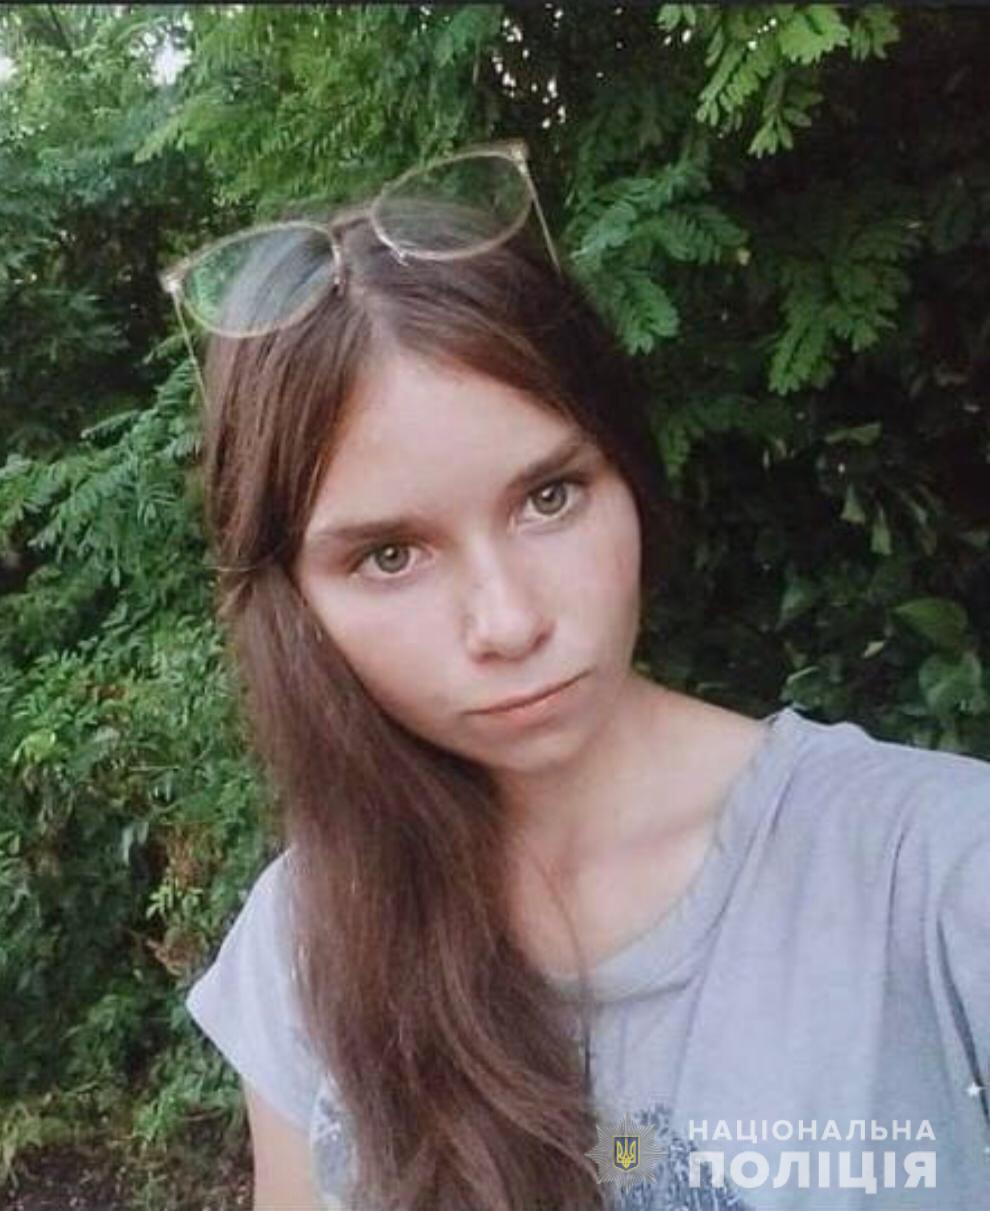 Тіло кинули у колодязь: біля Кропивницького знайшли зниклу 16-річну дівчину (ФОТО) - фото 2